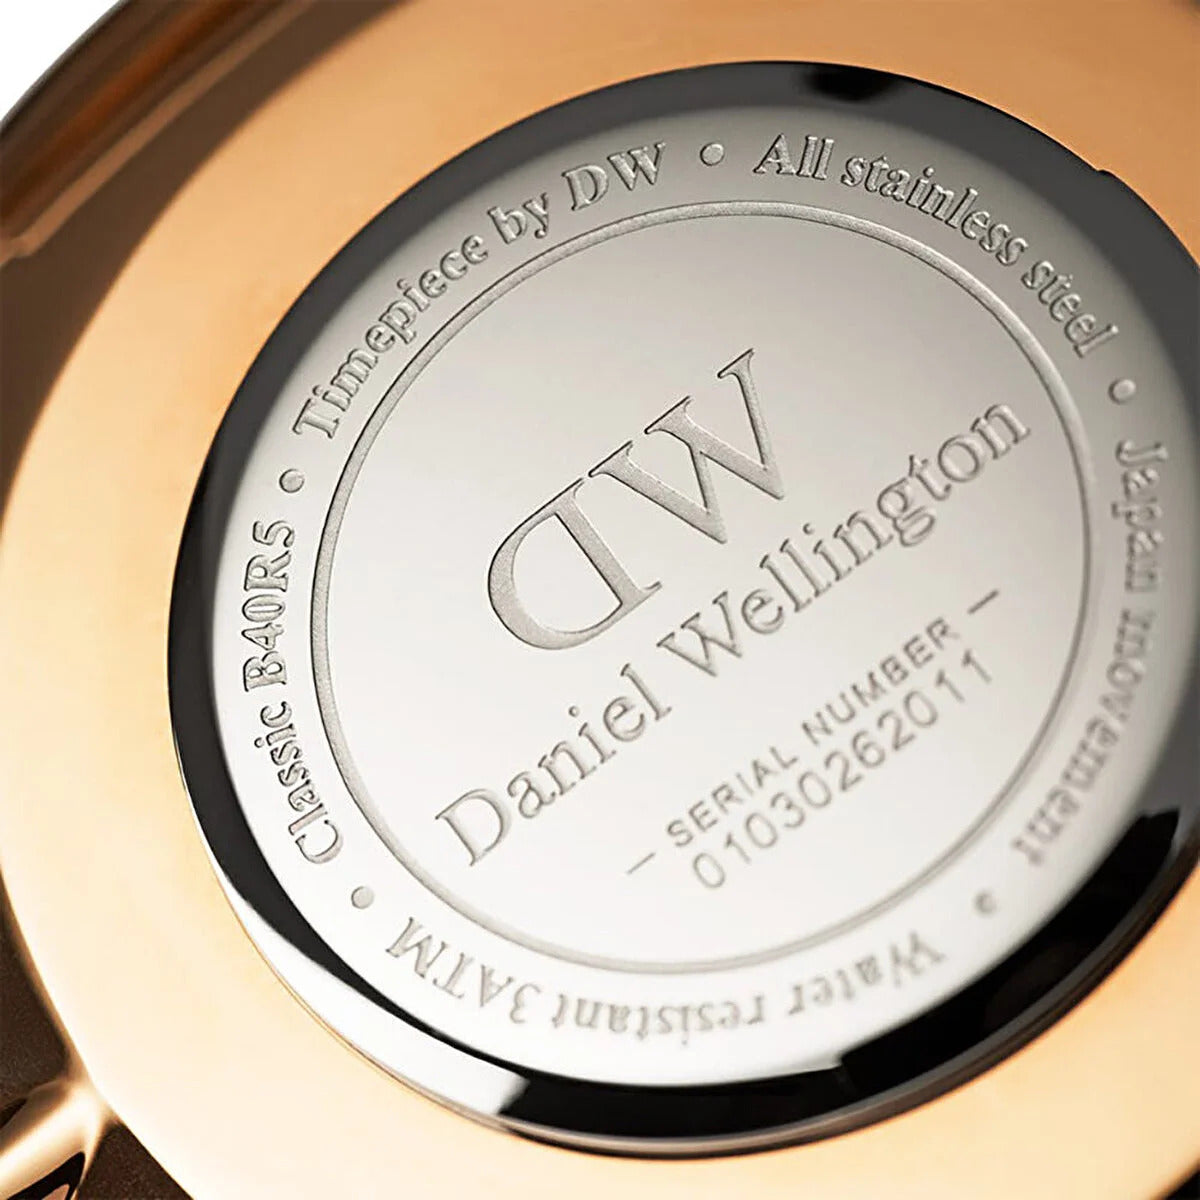 ساعة دانيال ولينغتون الرجالية بحركة كوارتز ولون مينا أبيض - DW-1221